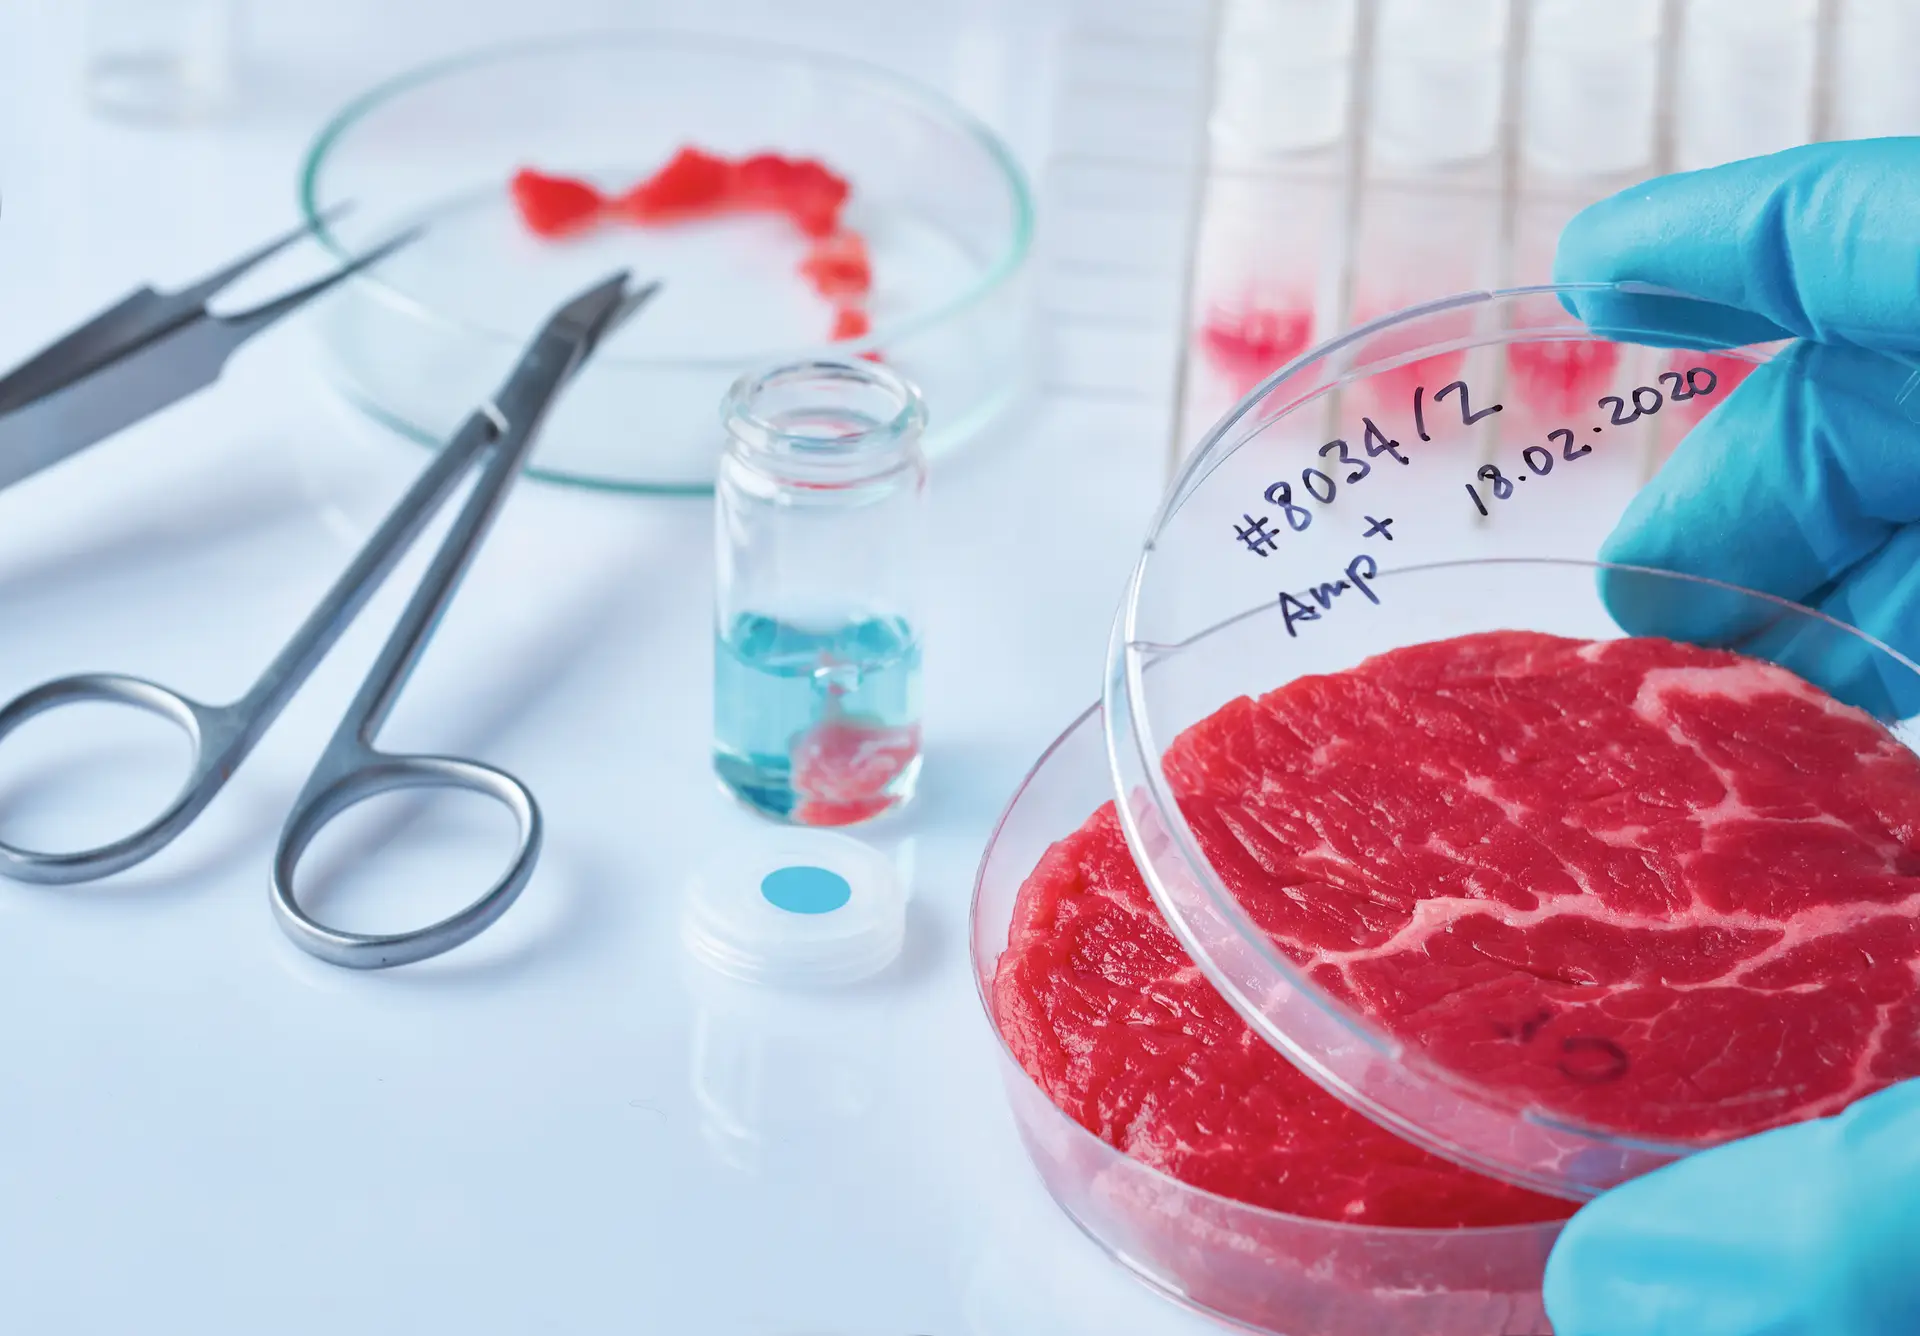 O que tem a carne a ver com biotecnologia? Vários engenheiros biomédicos têm dedicado os últimos anos a produzir carne verdadeira sem abater um único animal. Cada vez mais, este será o futuro à mesa